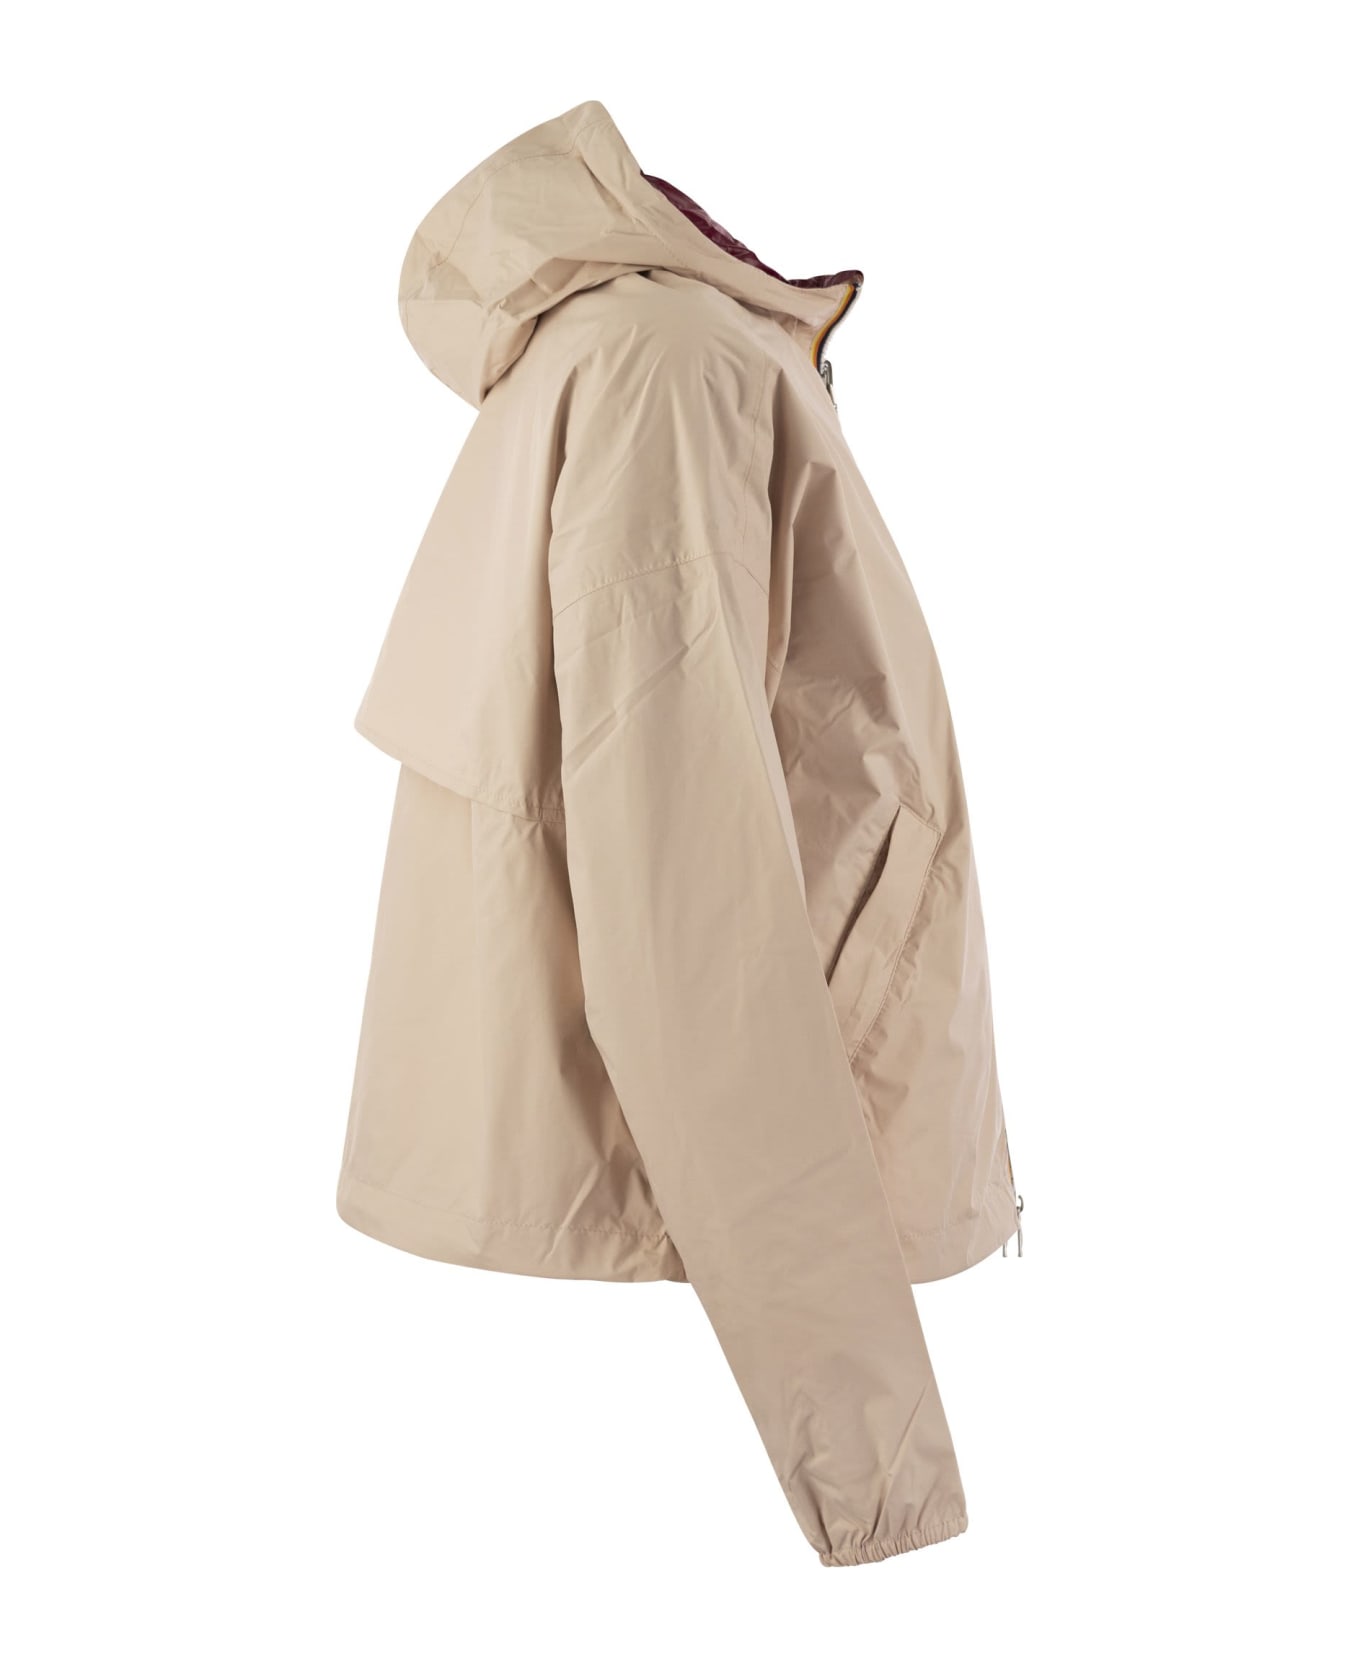 K-Way Laurette Plus - Reversible Hooded Jacket - Peach/bordeaux